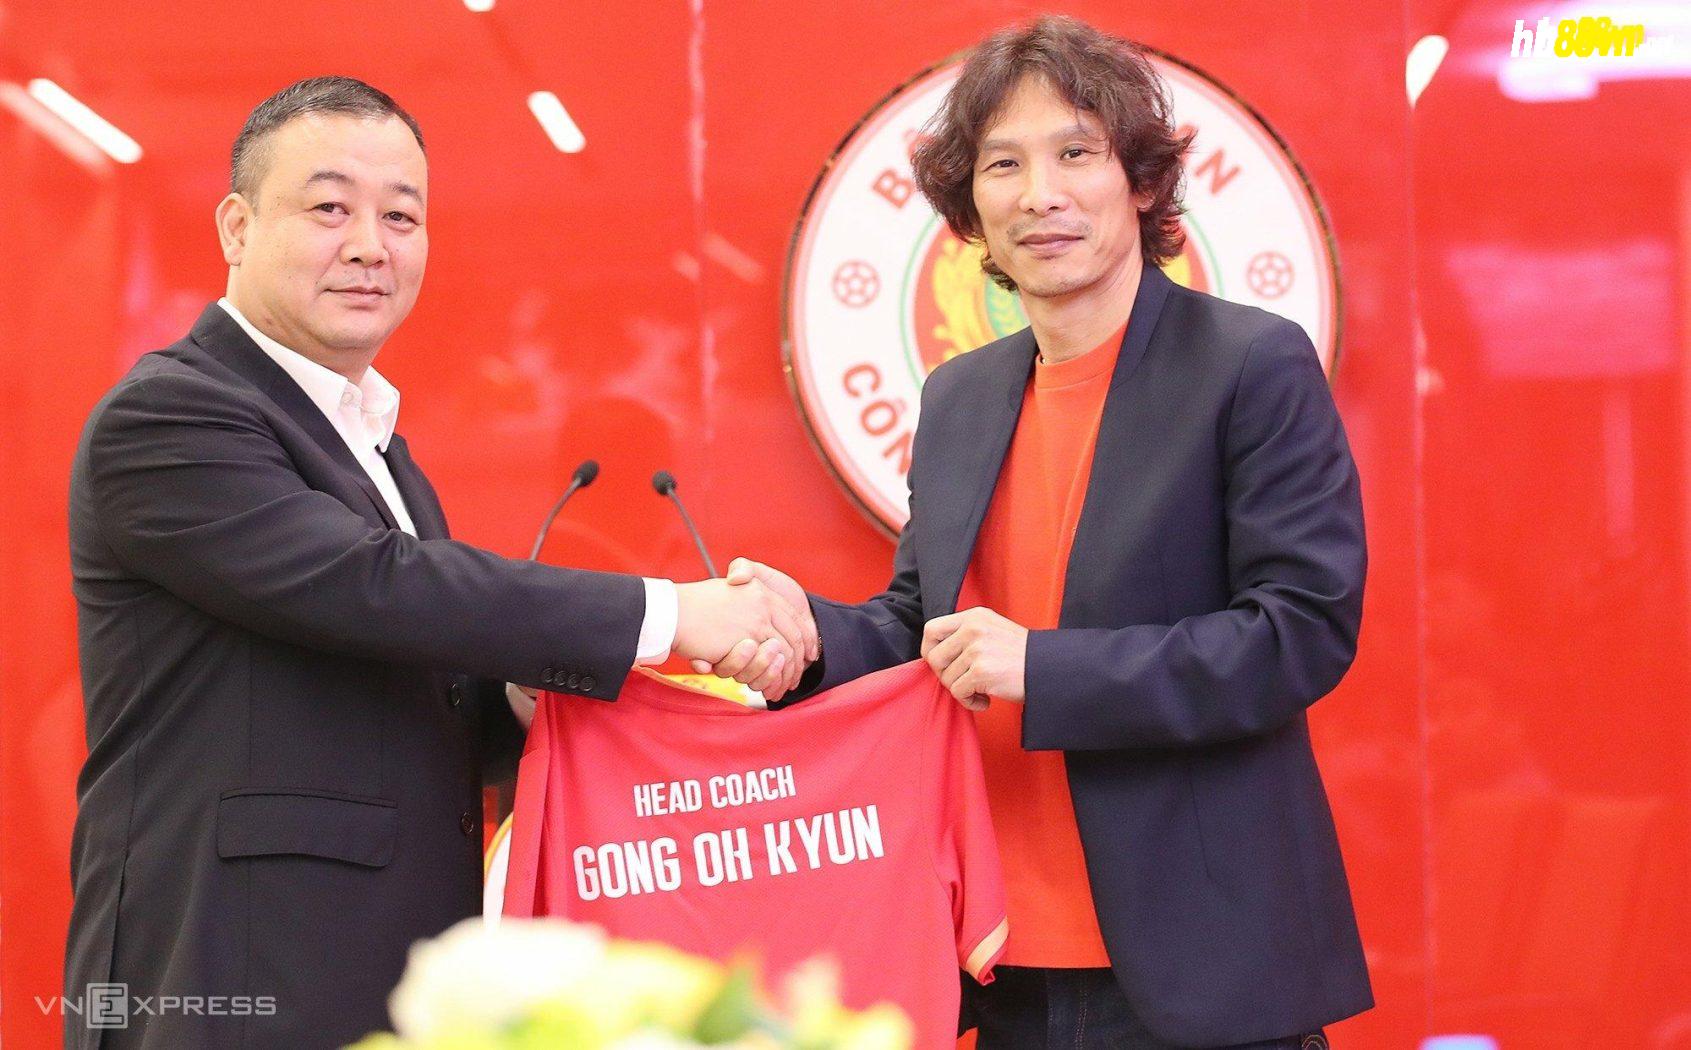 HLV Gong Oh-kyun ký hợp đồng với CAHN tại trụ sở ở đường Trần Hưng Đạo sáng 13/11. Ảnh: Lâm Thoả